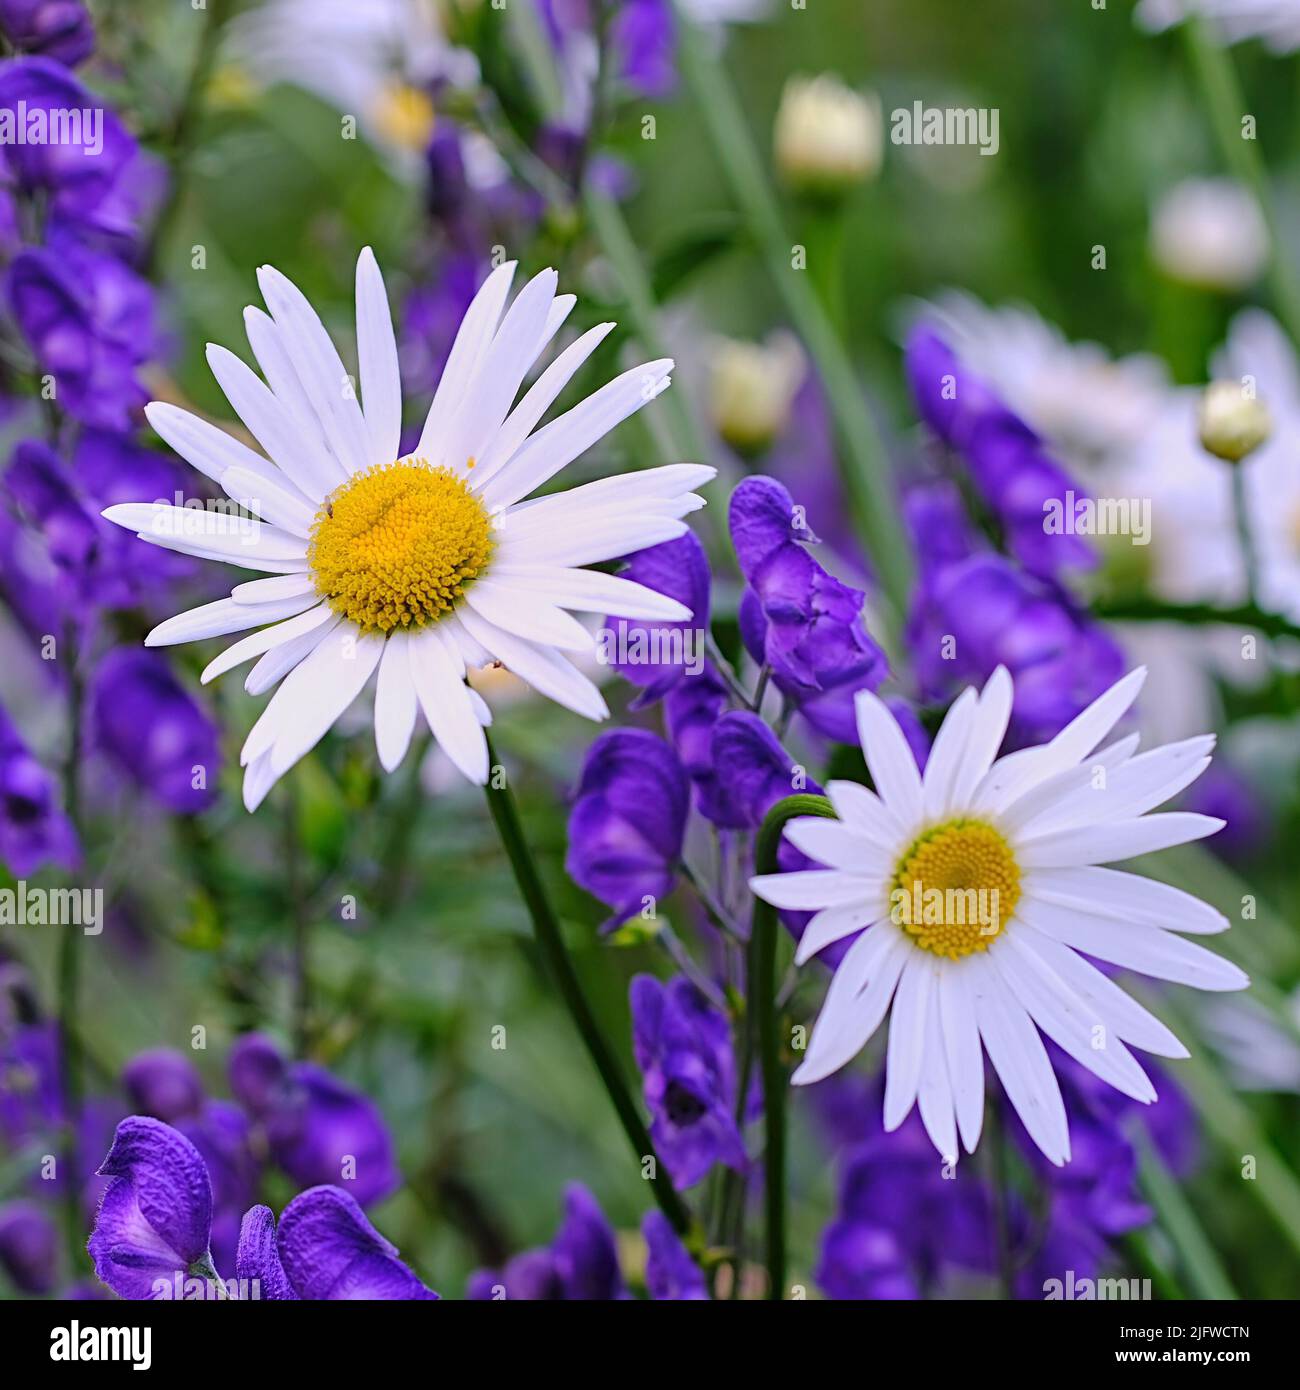 Draufsicht auf Gänseblümchen, die auf einer grünen Wiese inmitten einer violetten Flora wachsen. Marguerite mehrjährige blühende Pflanzen auf einem grasbewachsenen Feld im Frühjahr von oben Stockfoto